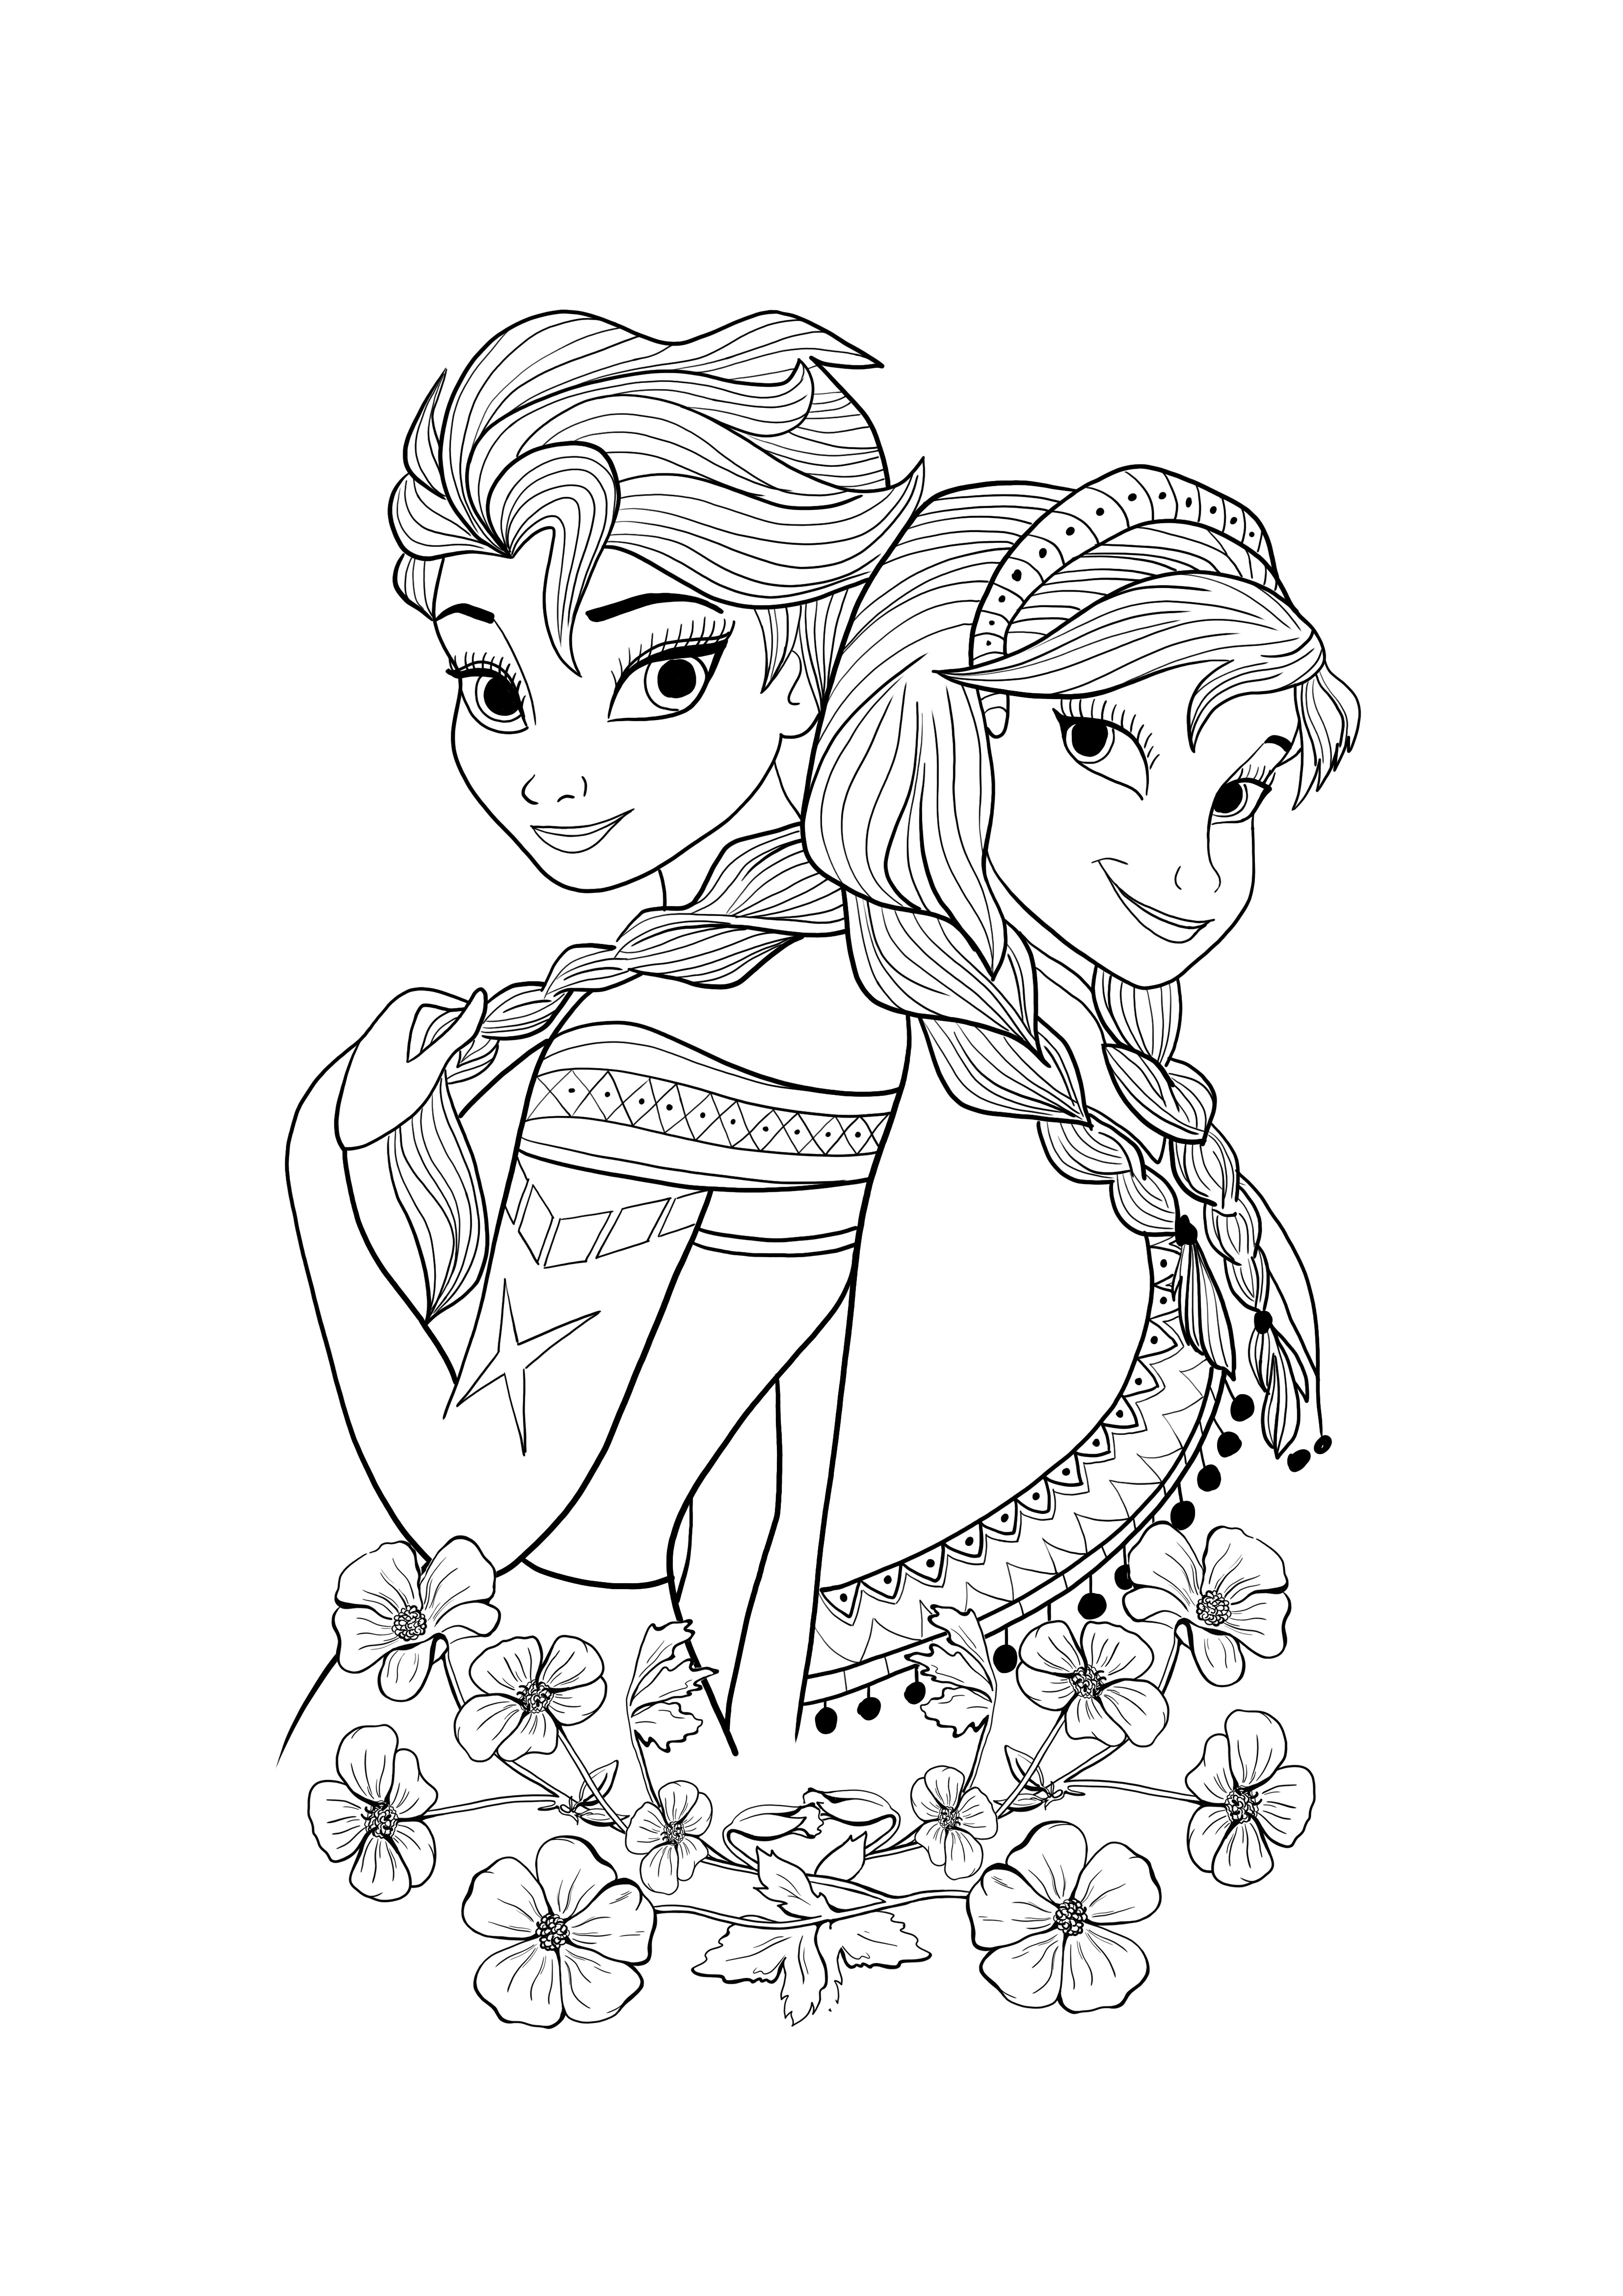 Elsa és Ana ingyenesen letölthető és színezhető